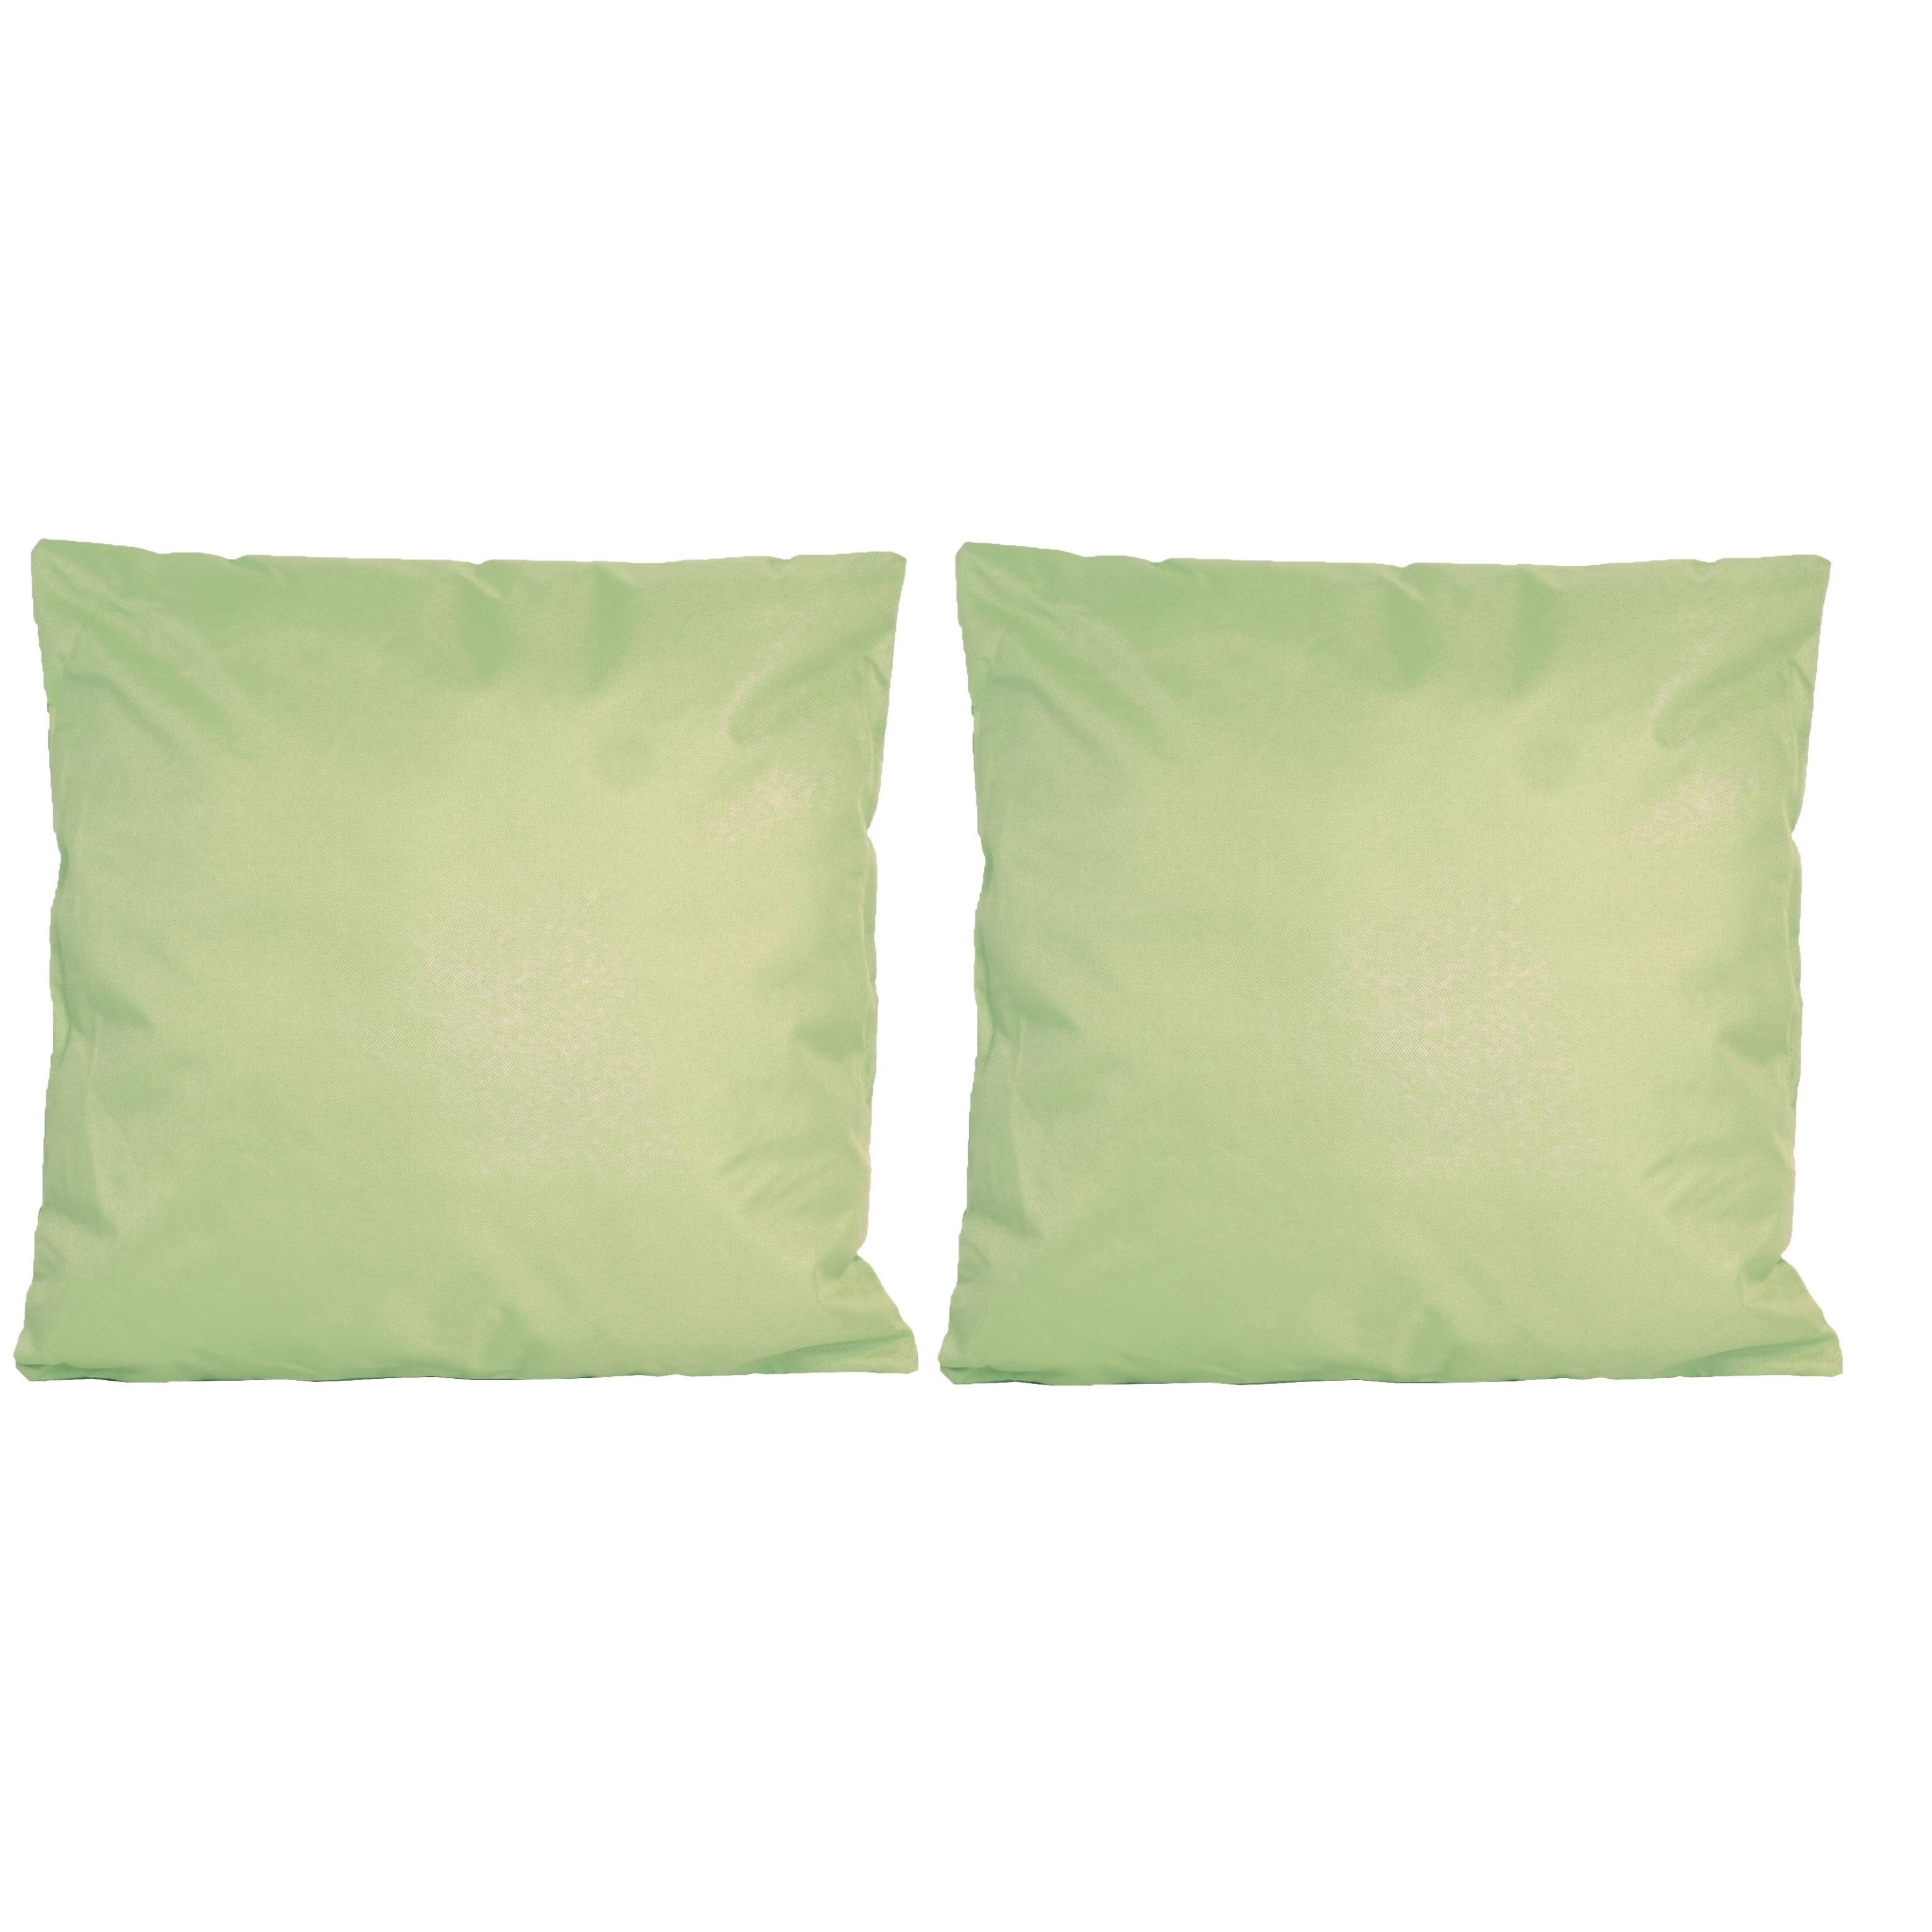 2x Bank-sier kussens voor binnen en buiten in de kleur mint groen 45 x 45 cm